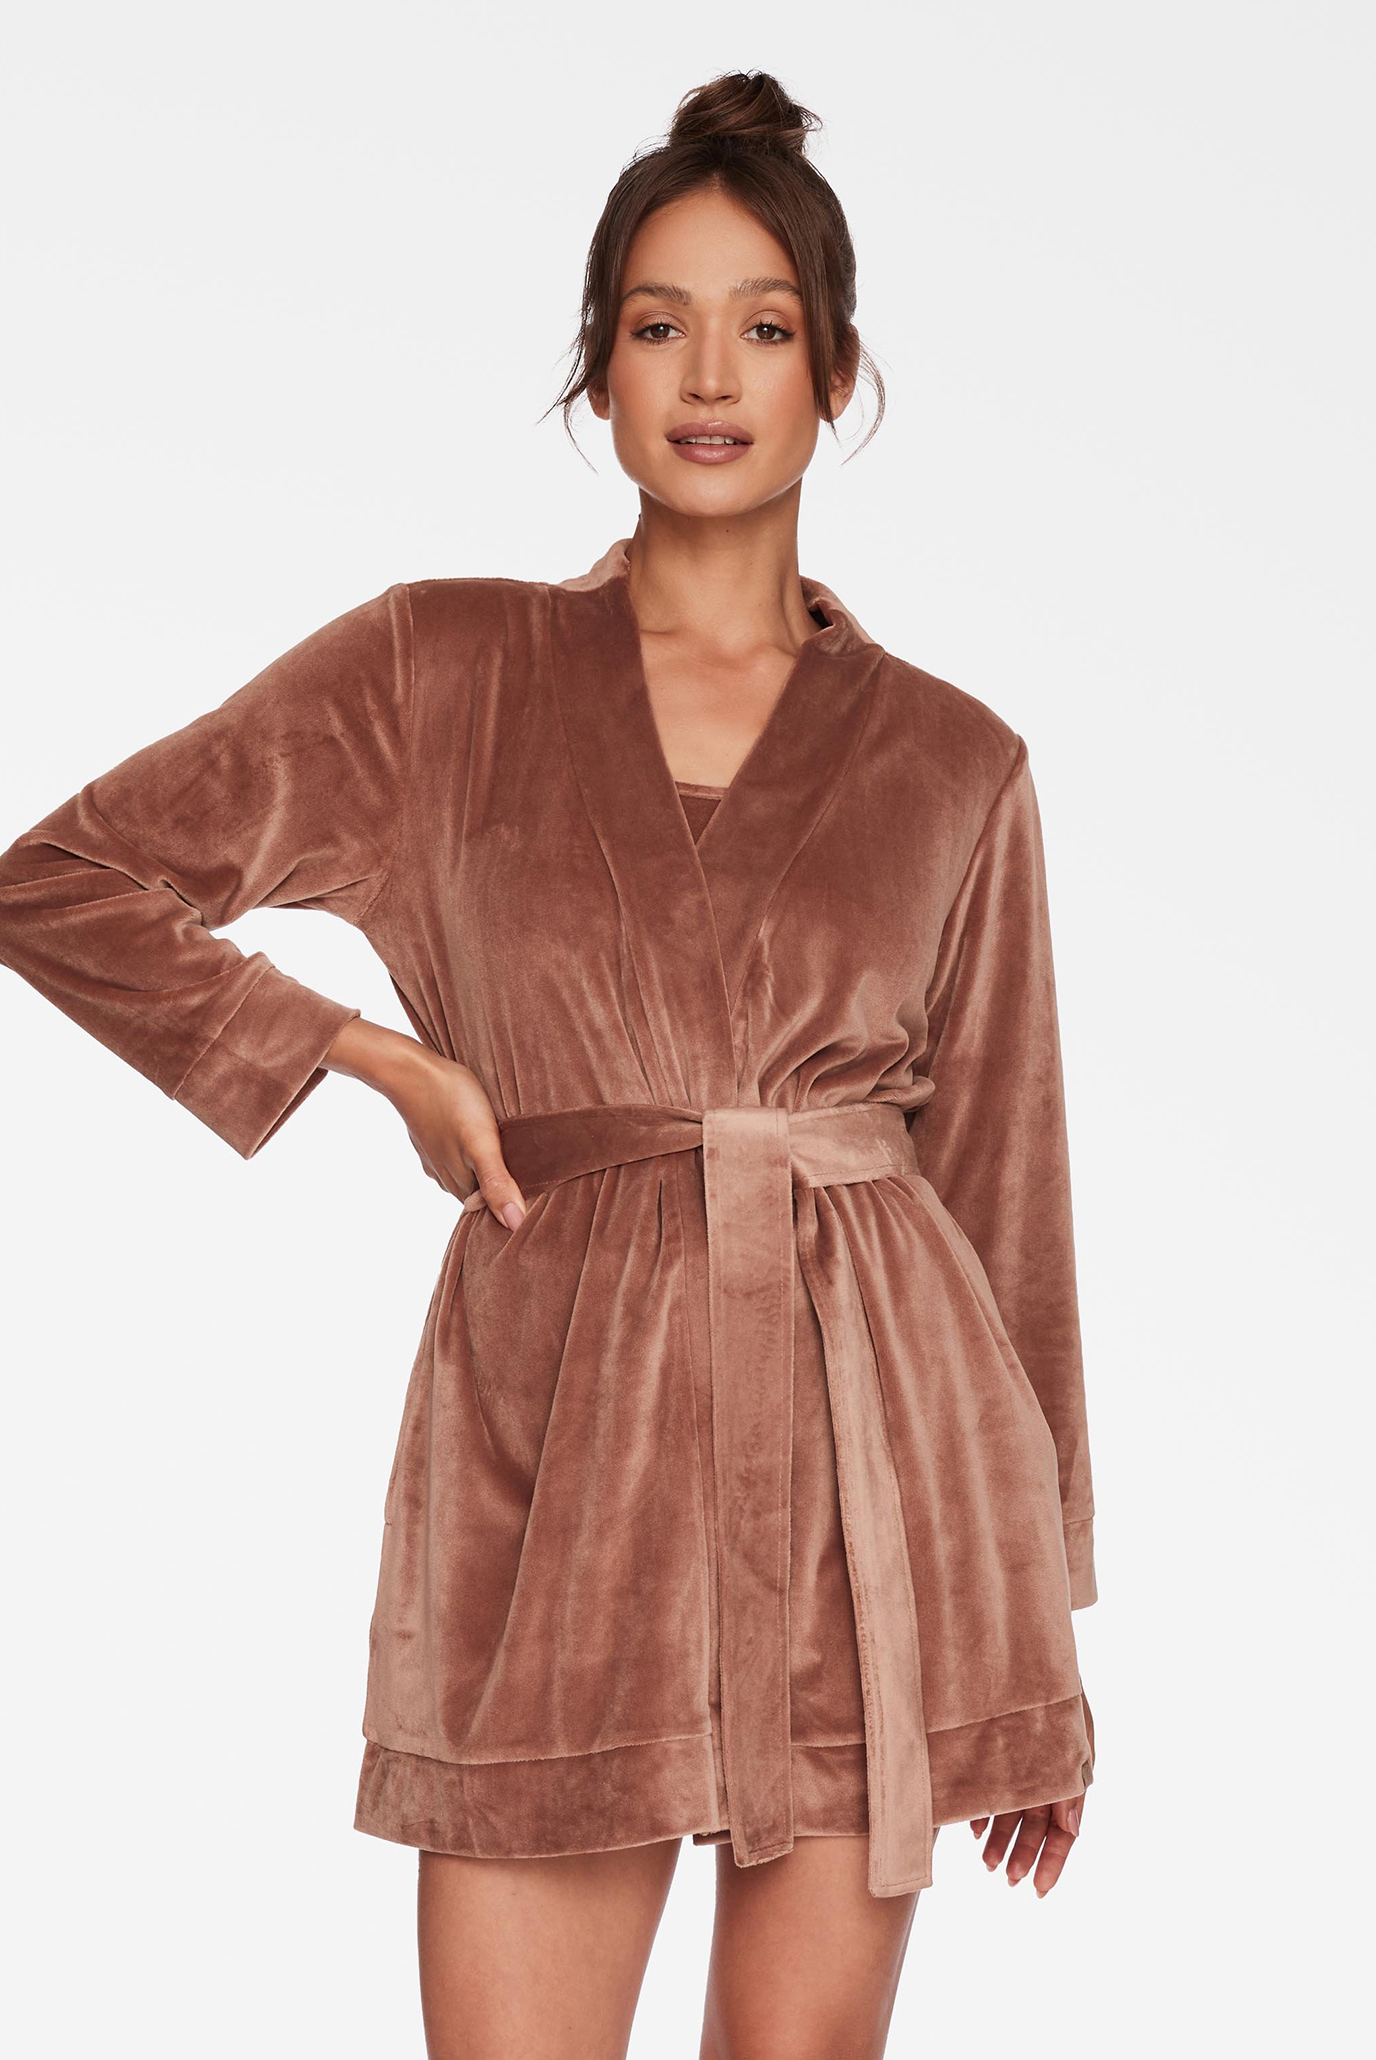 Женский коричневый велюровый халат CHAGGIT 1